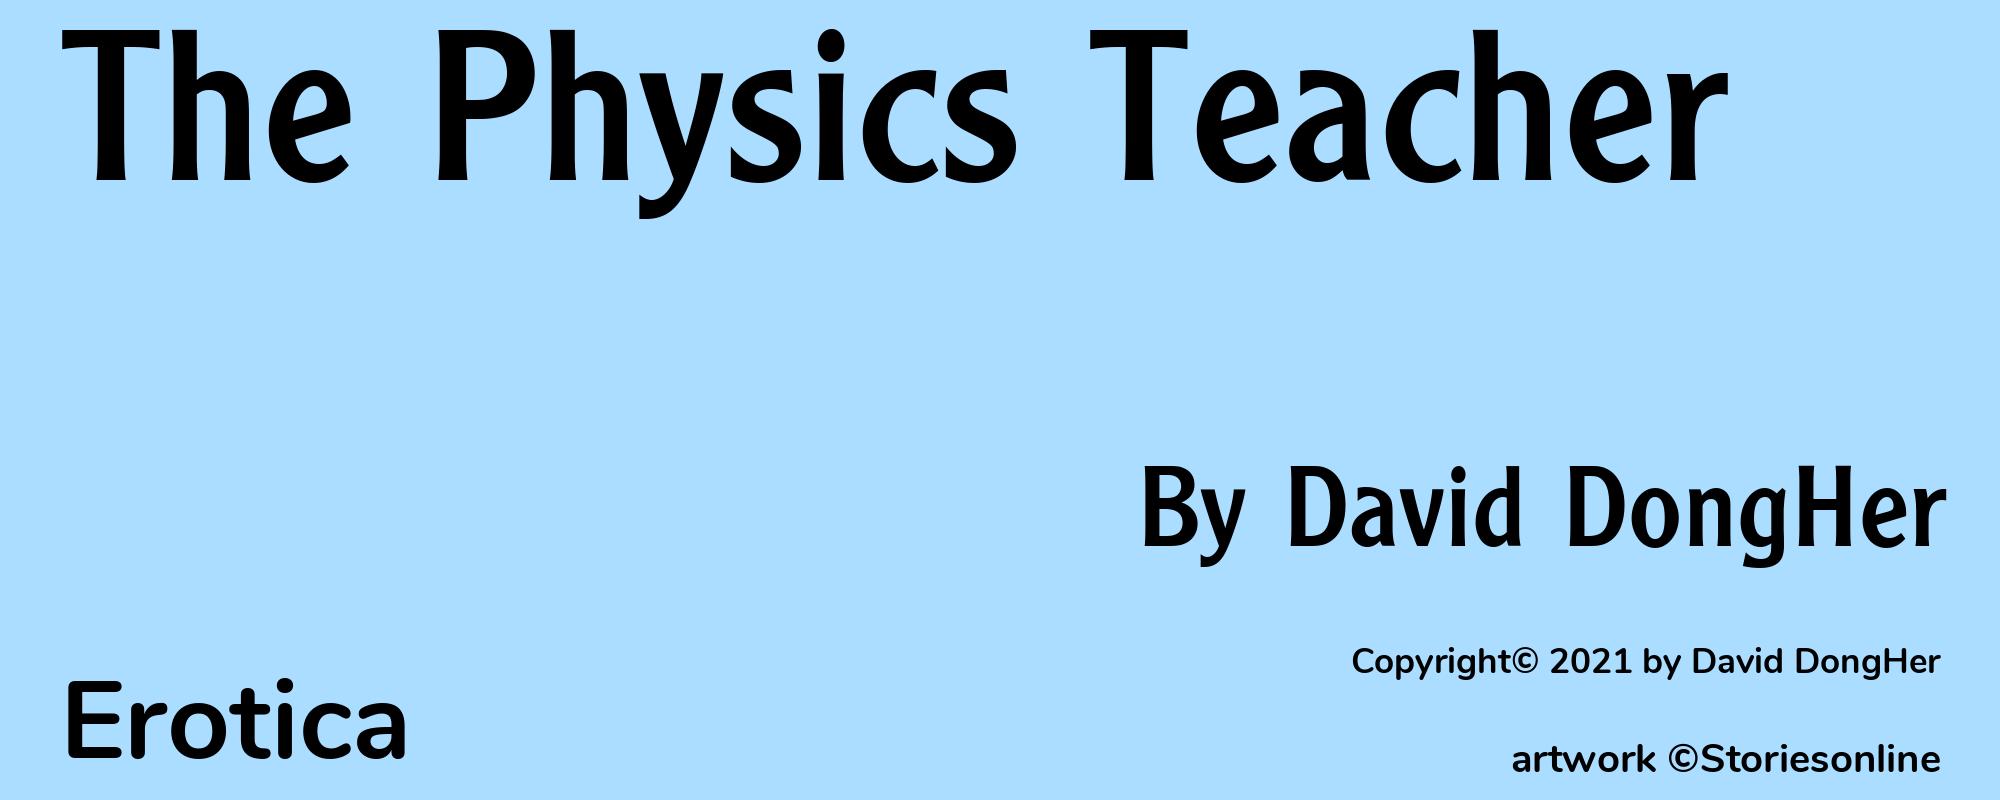 The Physics Teacher - Cover